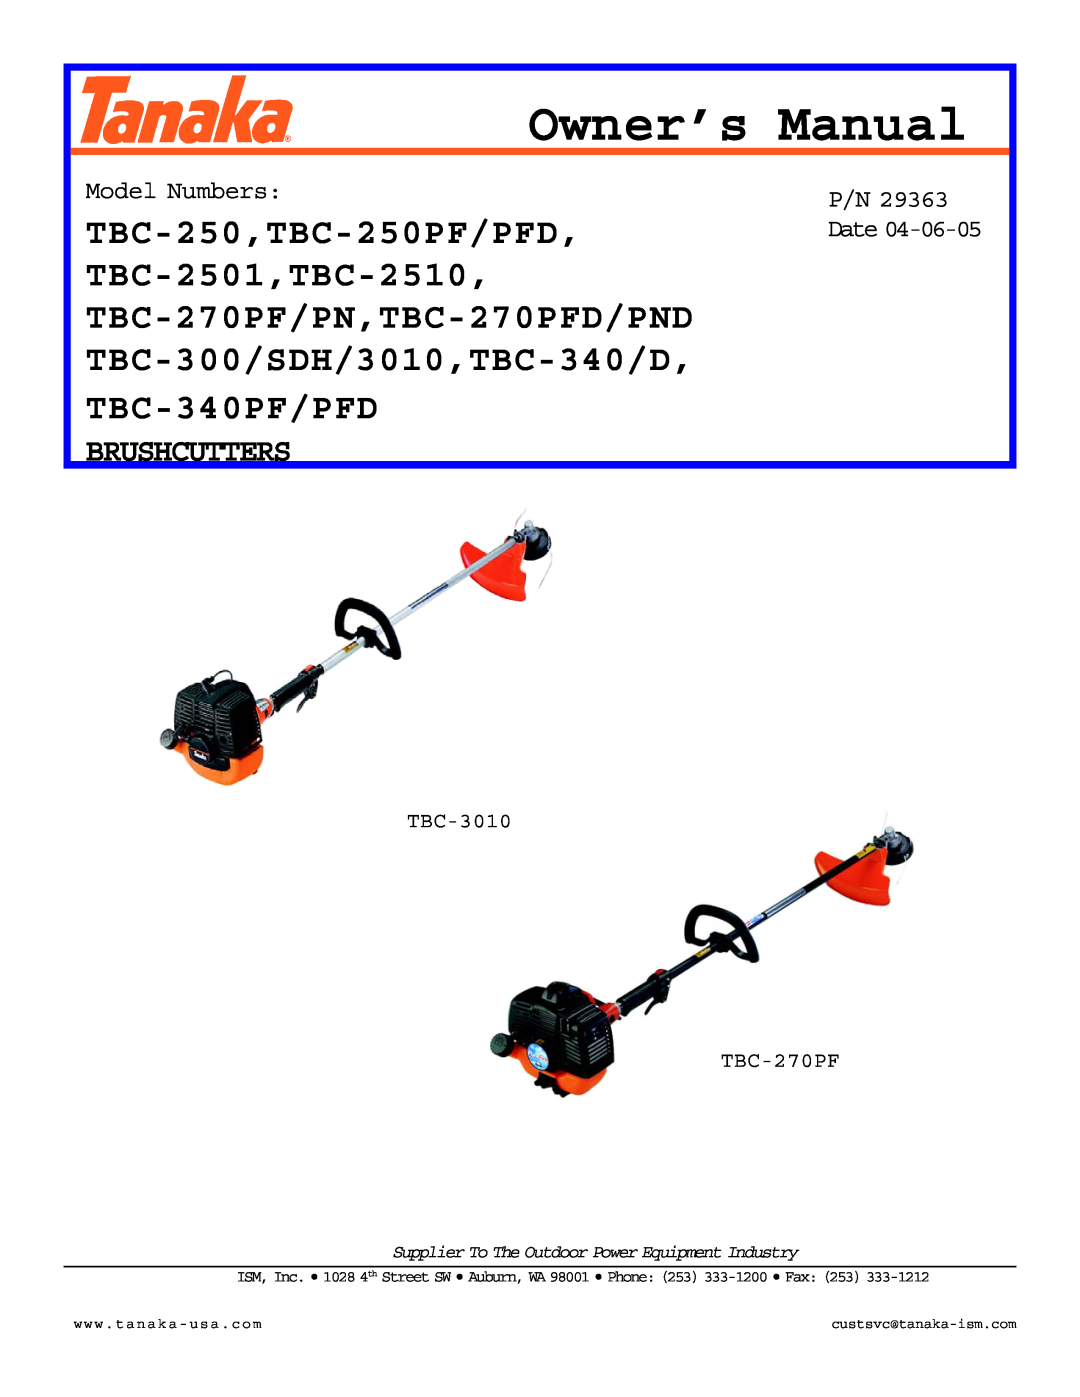 Tanaka TBC-2510, TBC-340/D owner manual TBC-340PF/PFD, Brushcutters, Model Numbers, TBC-3010 TBC-270PF, P/N 29363 Date 